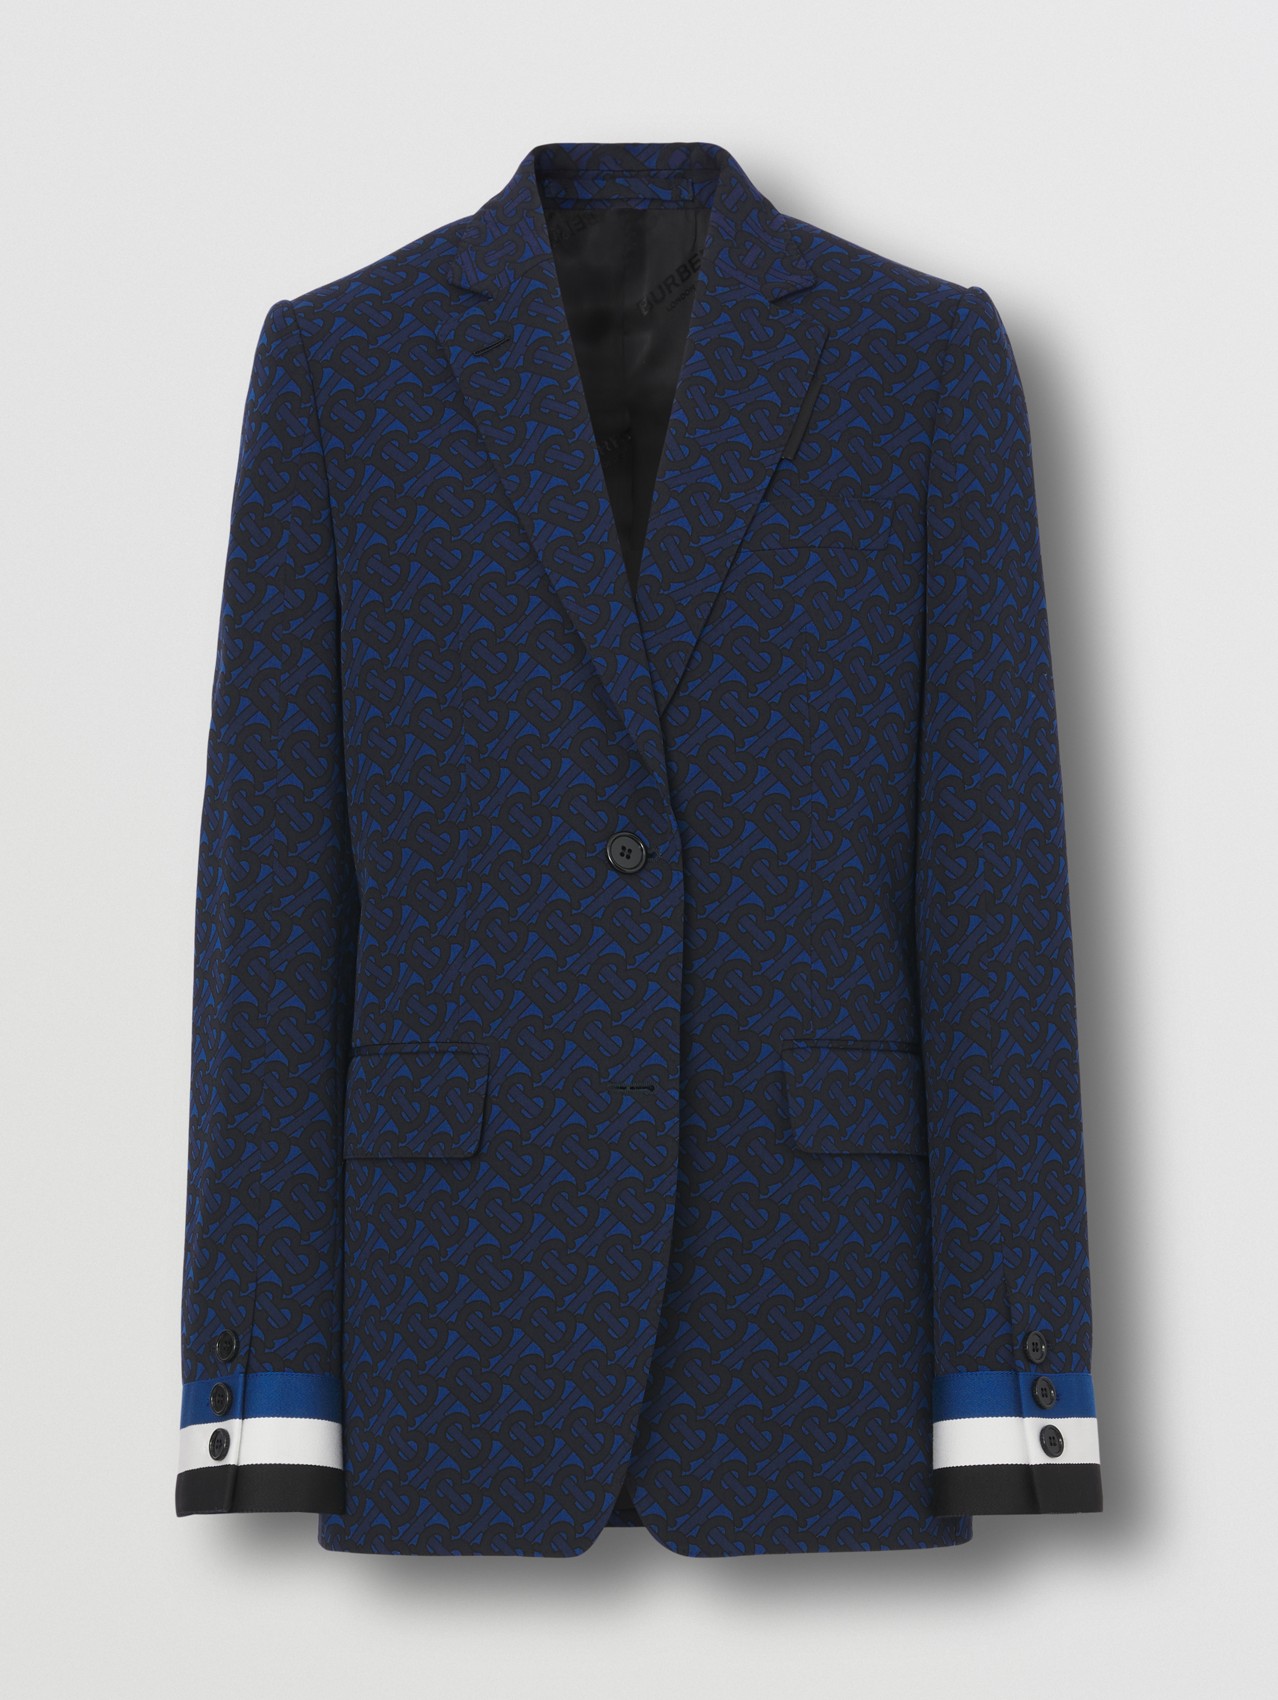 Elegantes Jackett aus einer Wollmischung mit Monogrammmuster (Tiefes Königsblau)